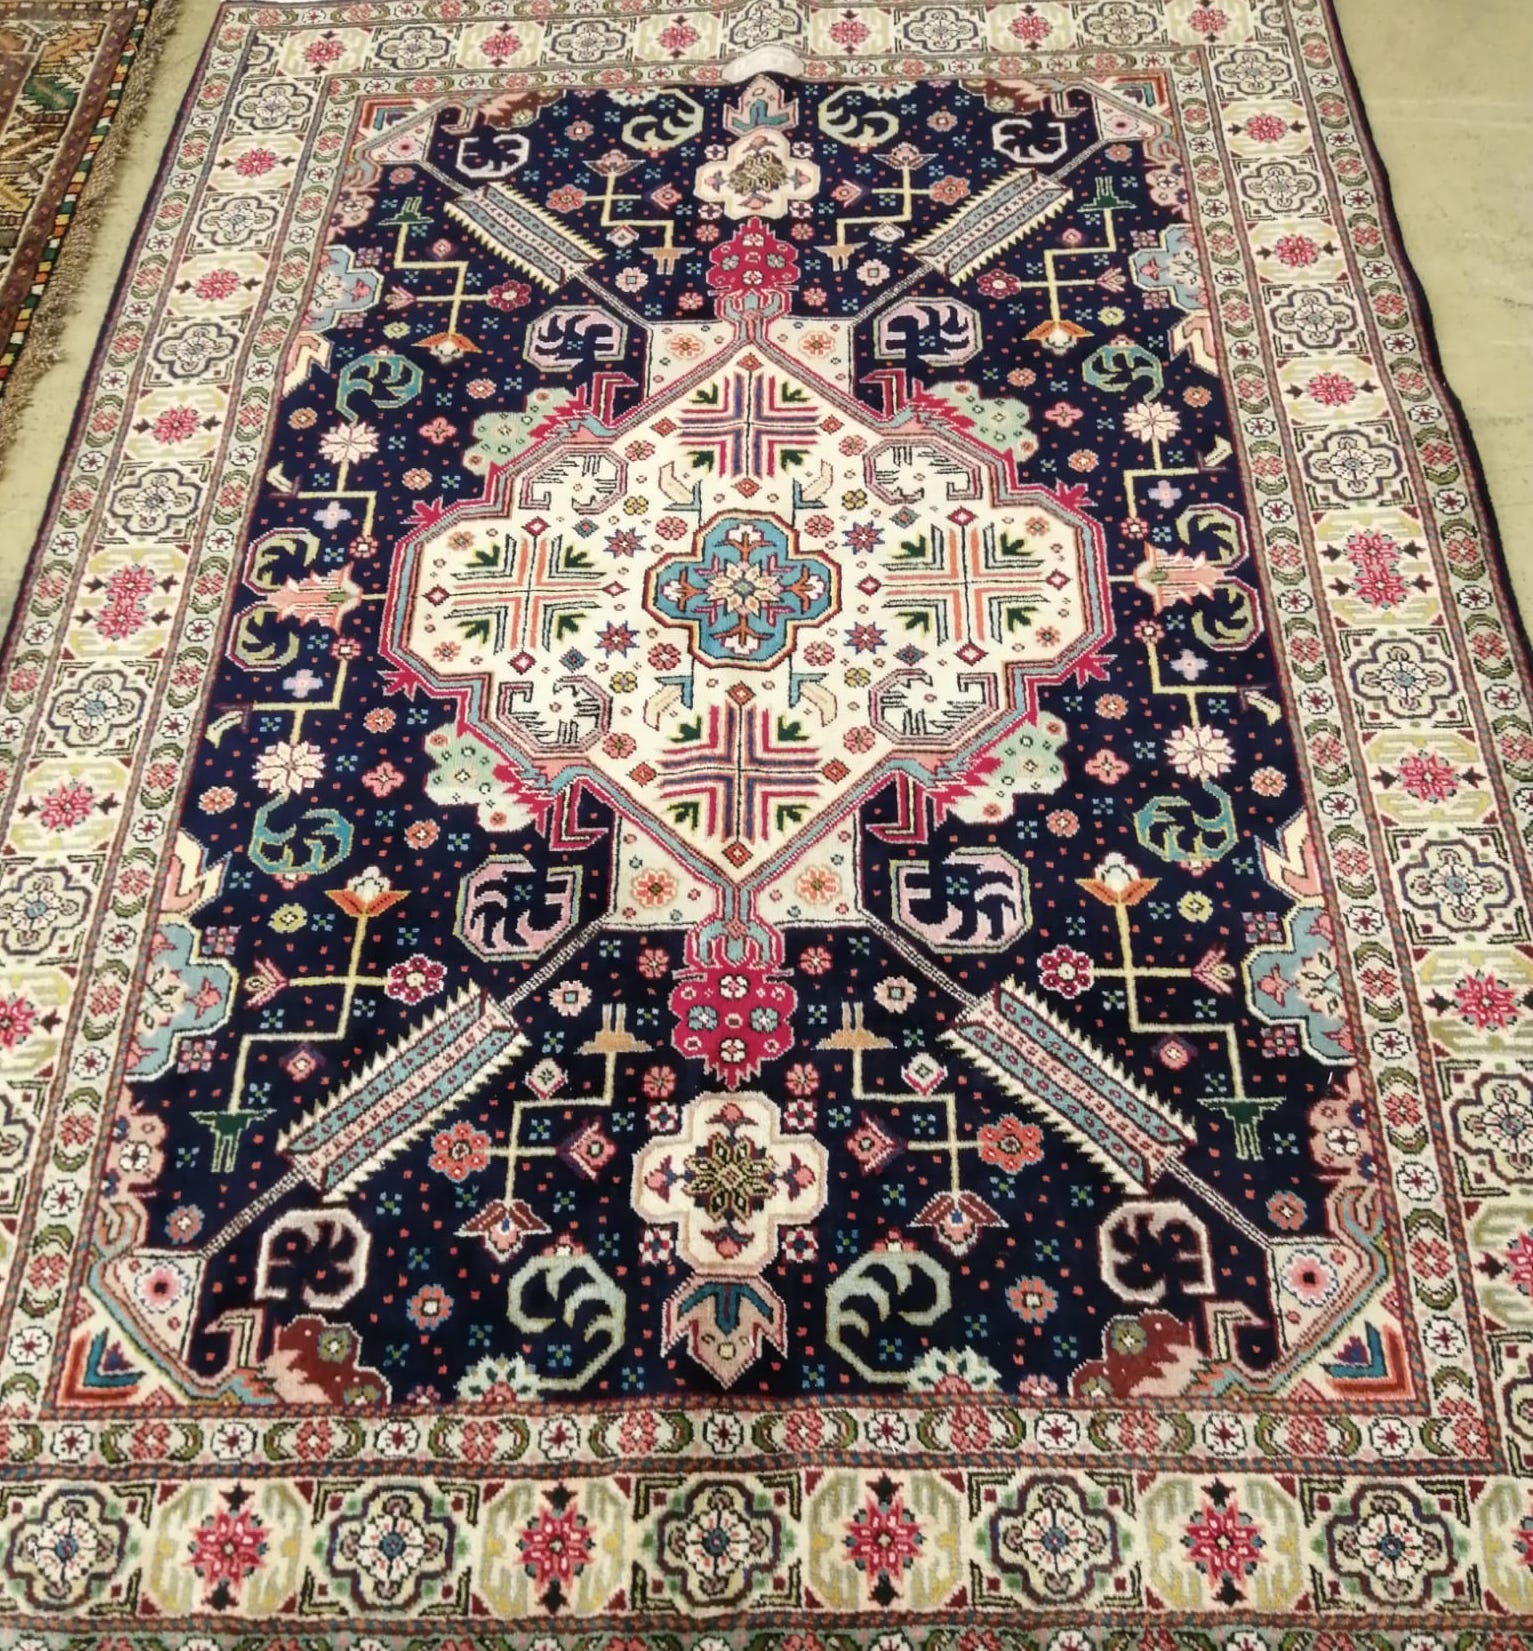 A Tabriz blue ground rug, 200 x 140cm